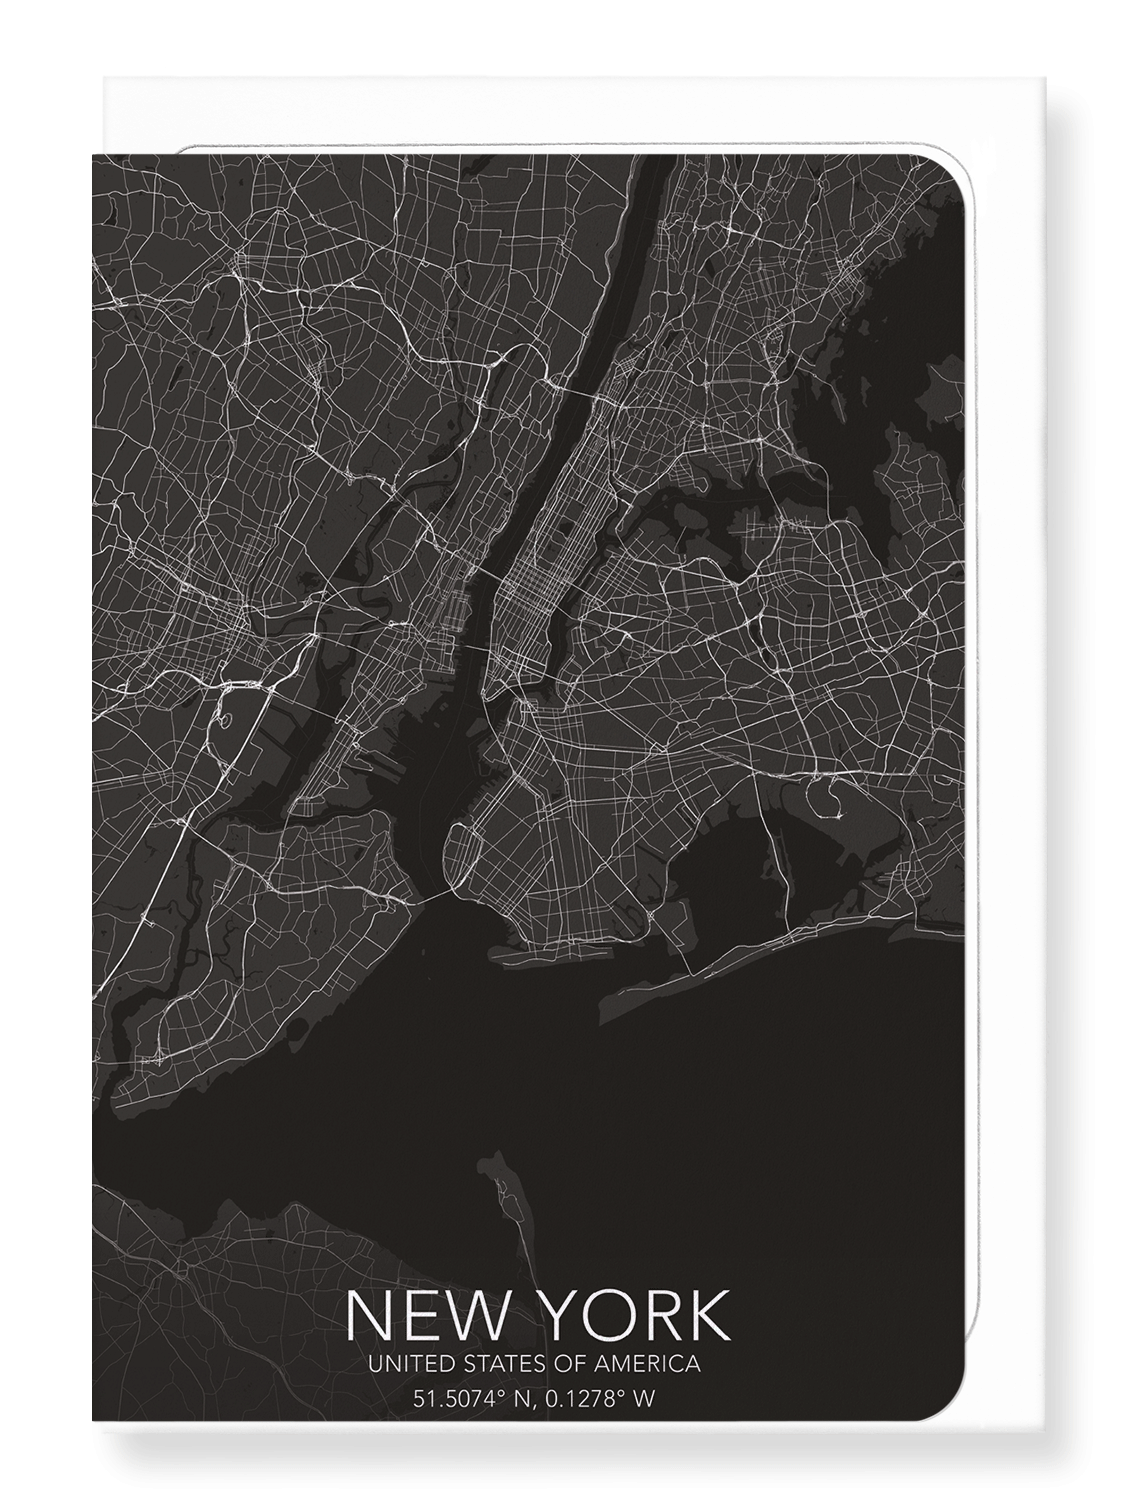 NEW YORK FULL MAP